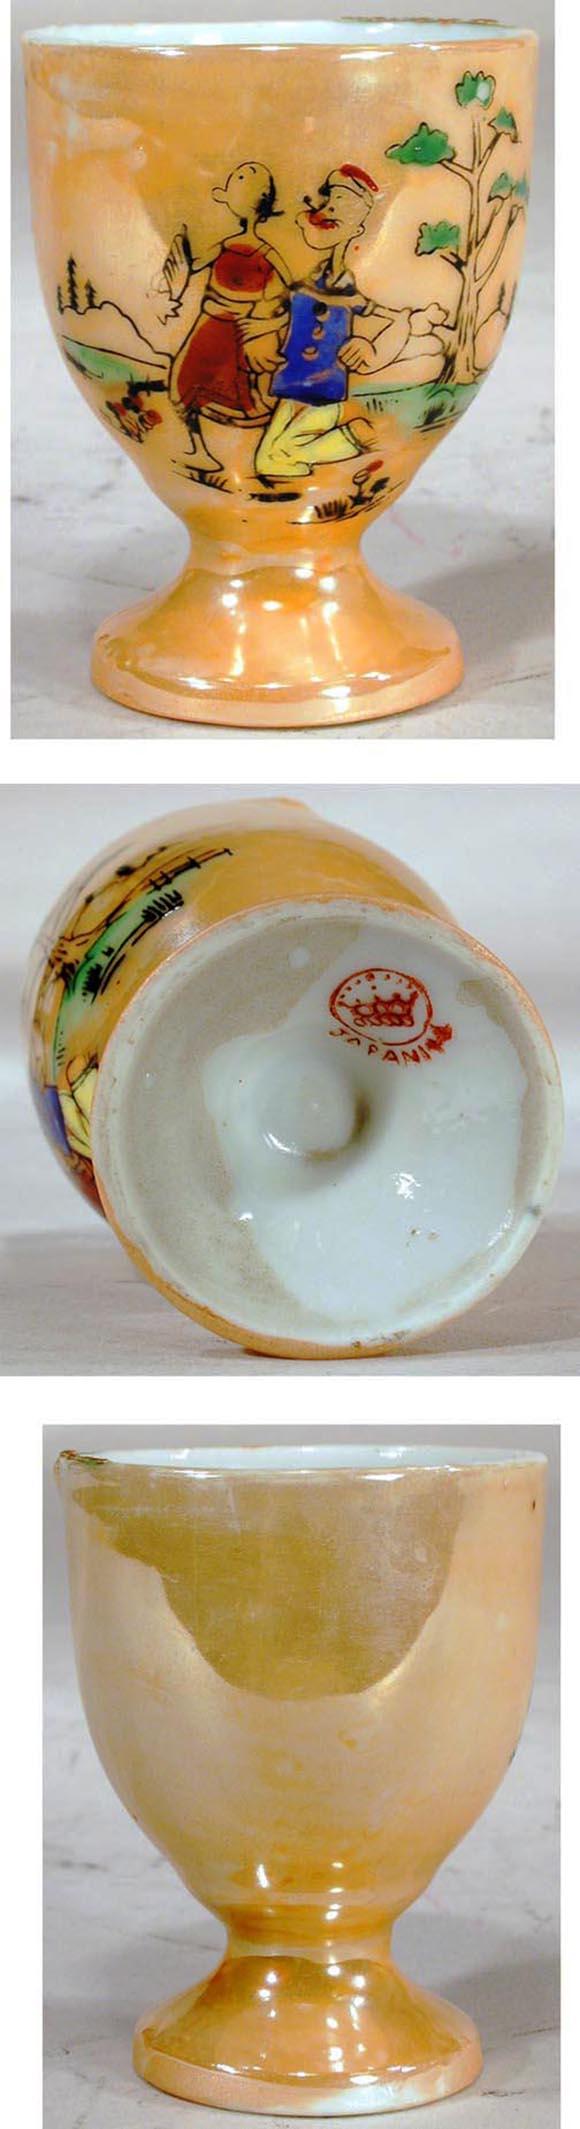 c.1935 Prewar Japan, Popeye & Olive Oyl Lustreware Egg Cup